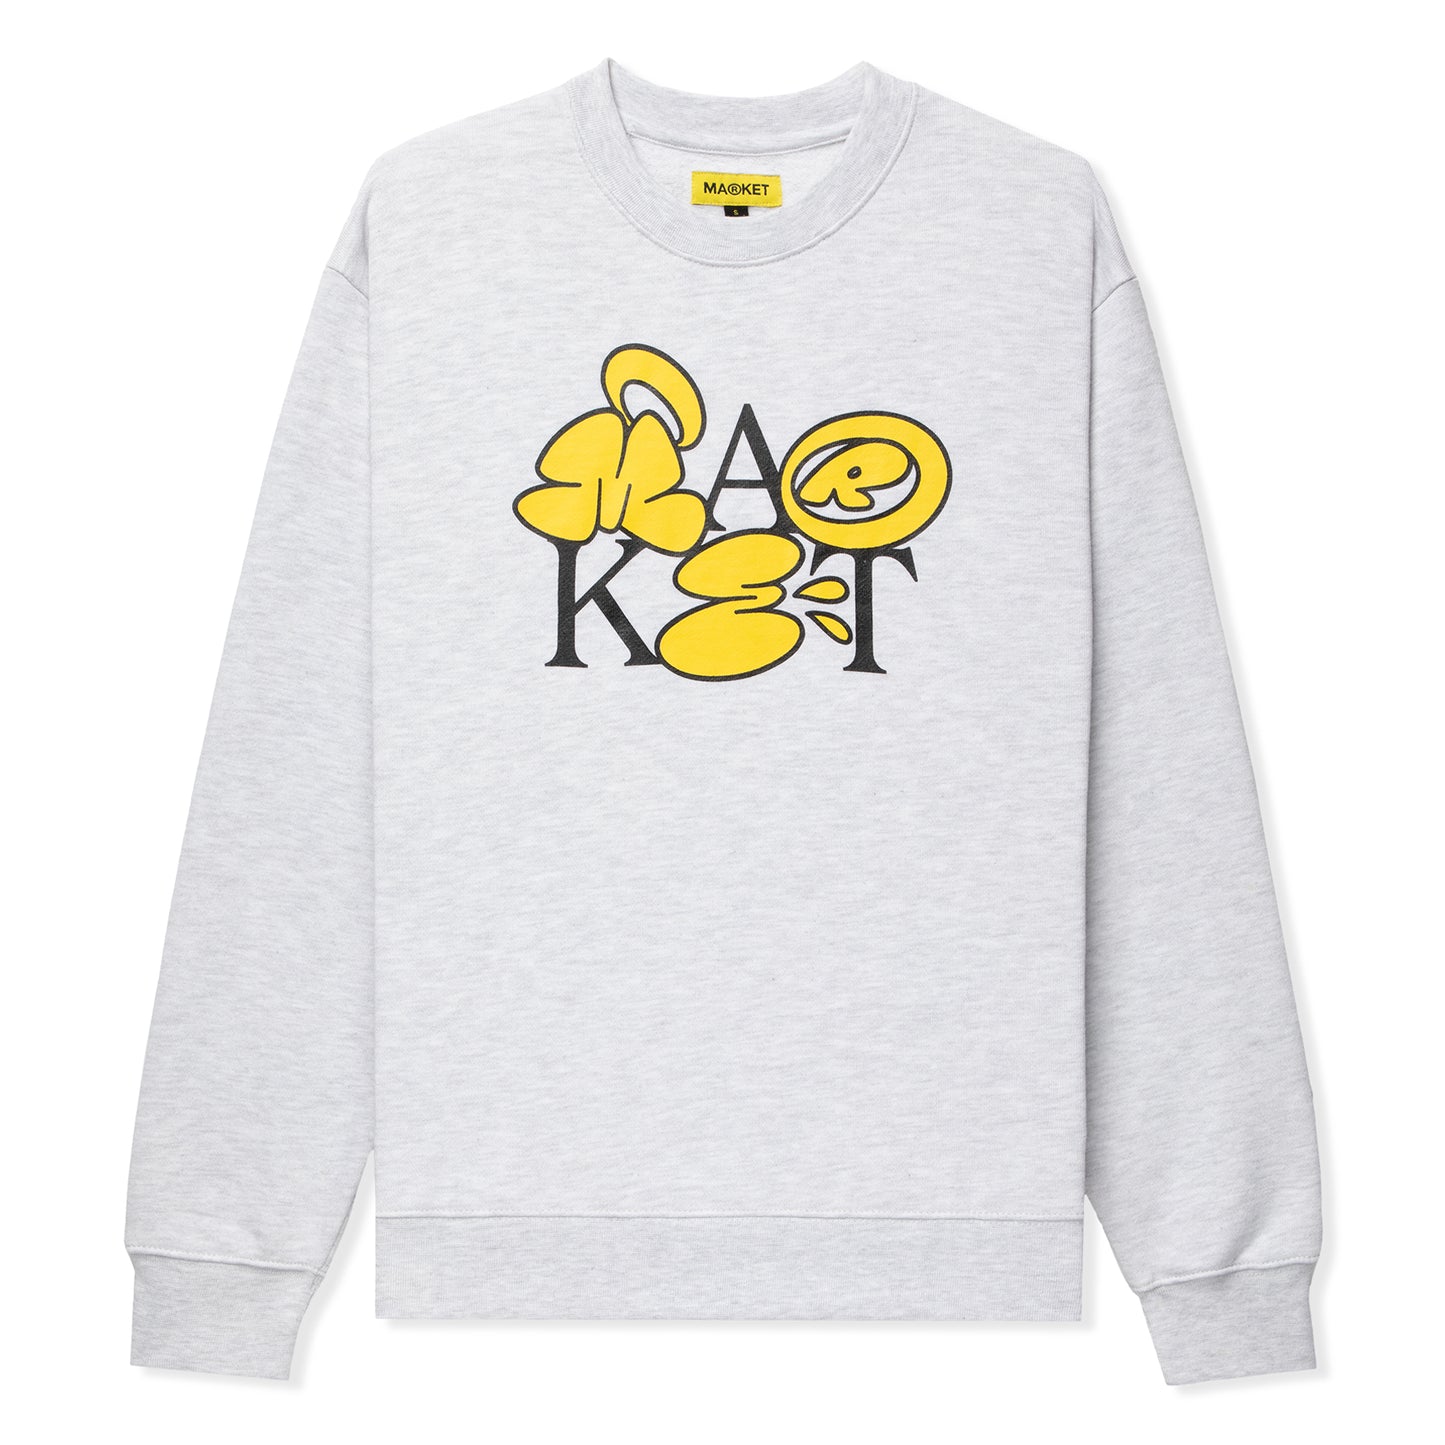 Market Bubble Letter Crewneck Sweatshirt (Ash)